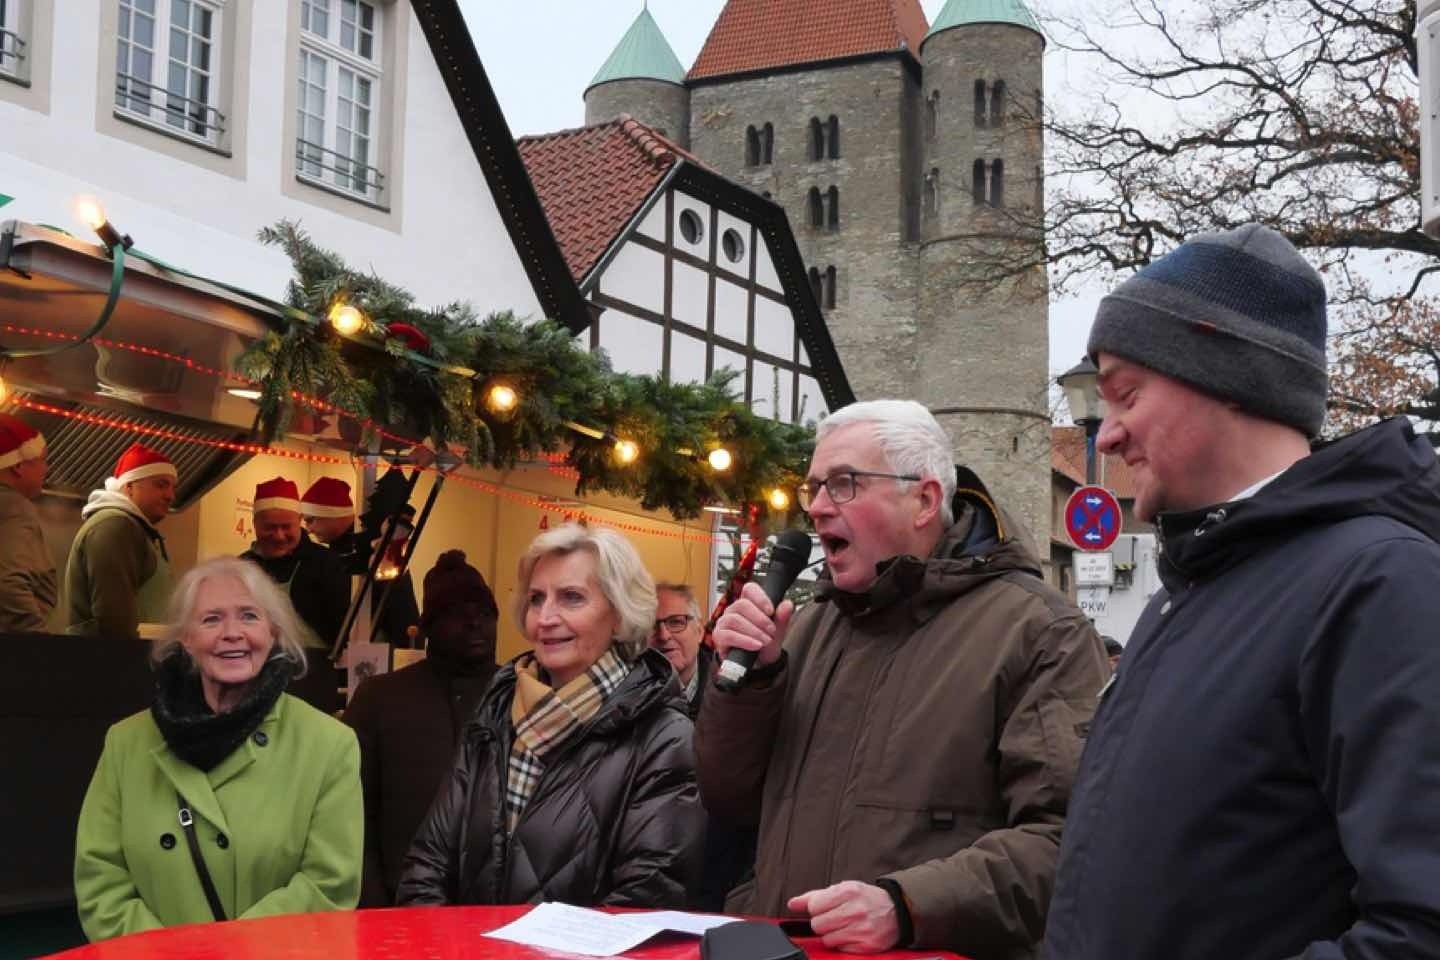 Freckenhorster Weihnachtsmarkt,Freckenhorst,Weihnachtsmarkt,Christian Murrenhoff, Peter Horstmann,Warendorf,Glühwein,